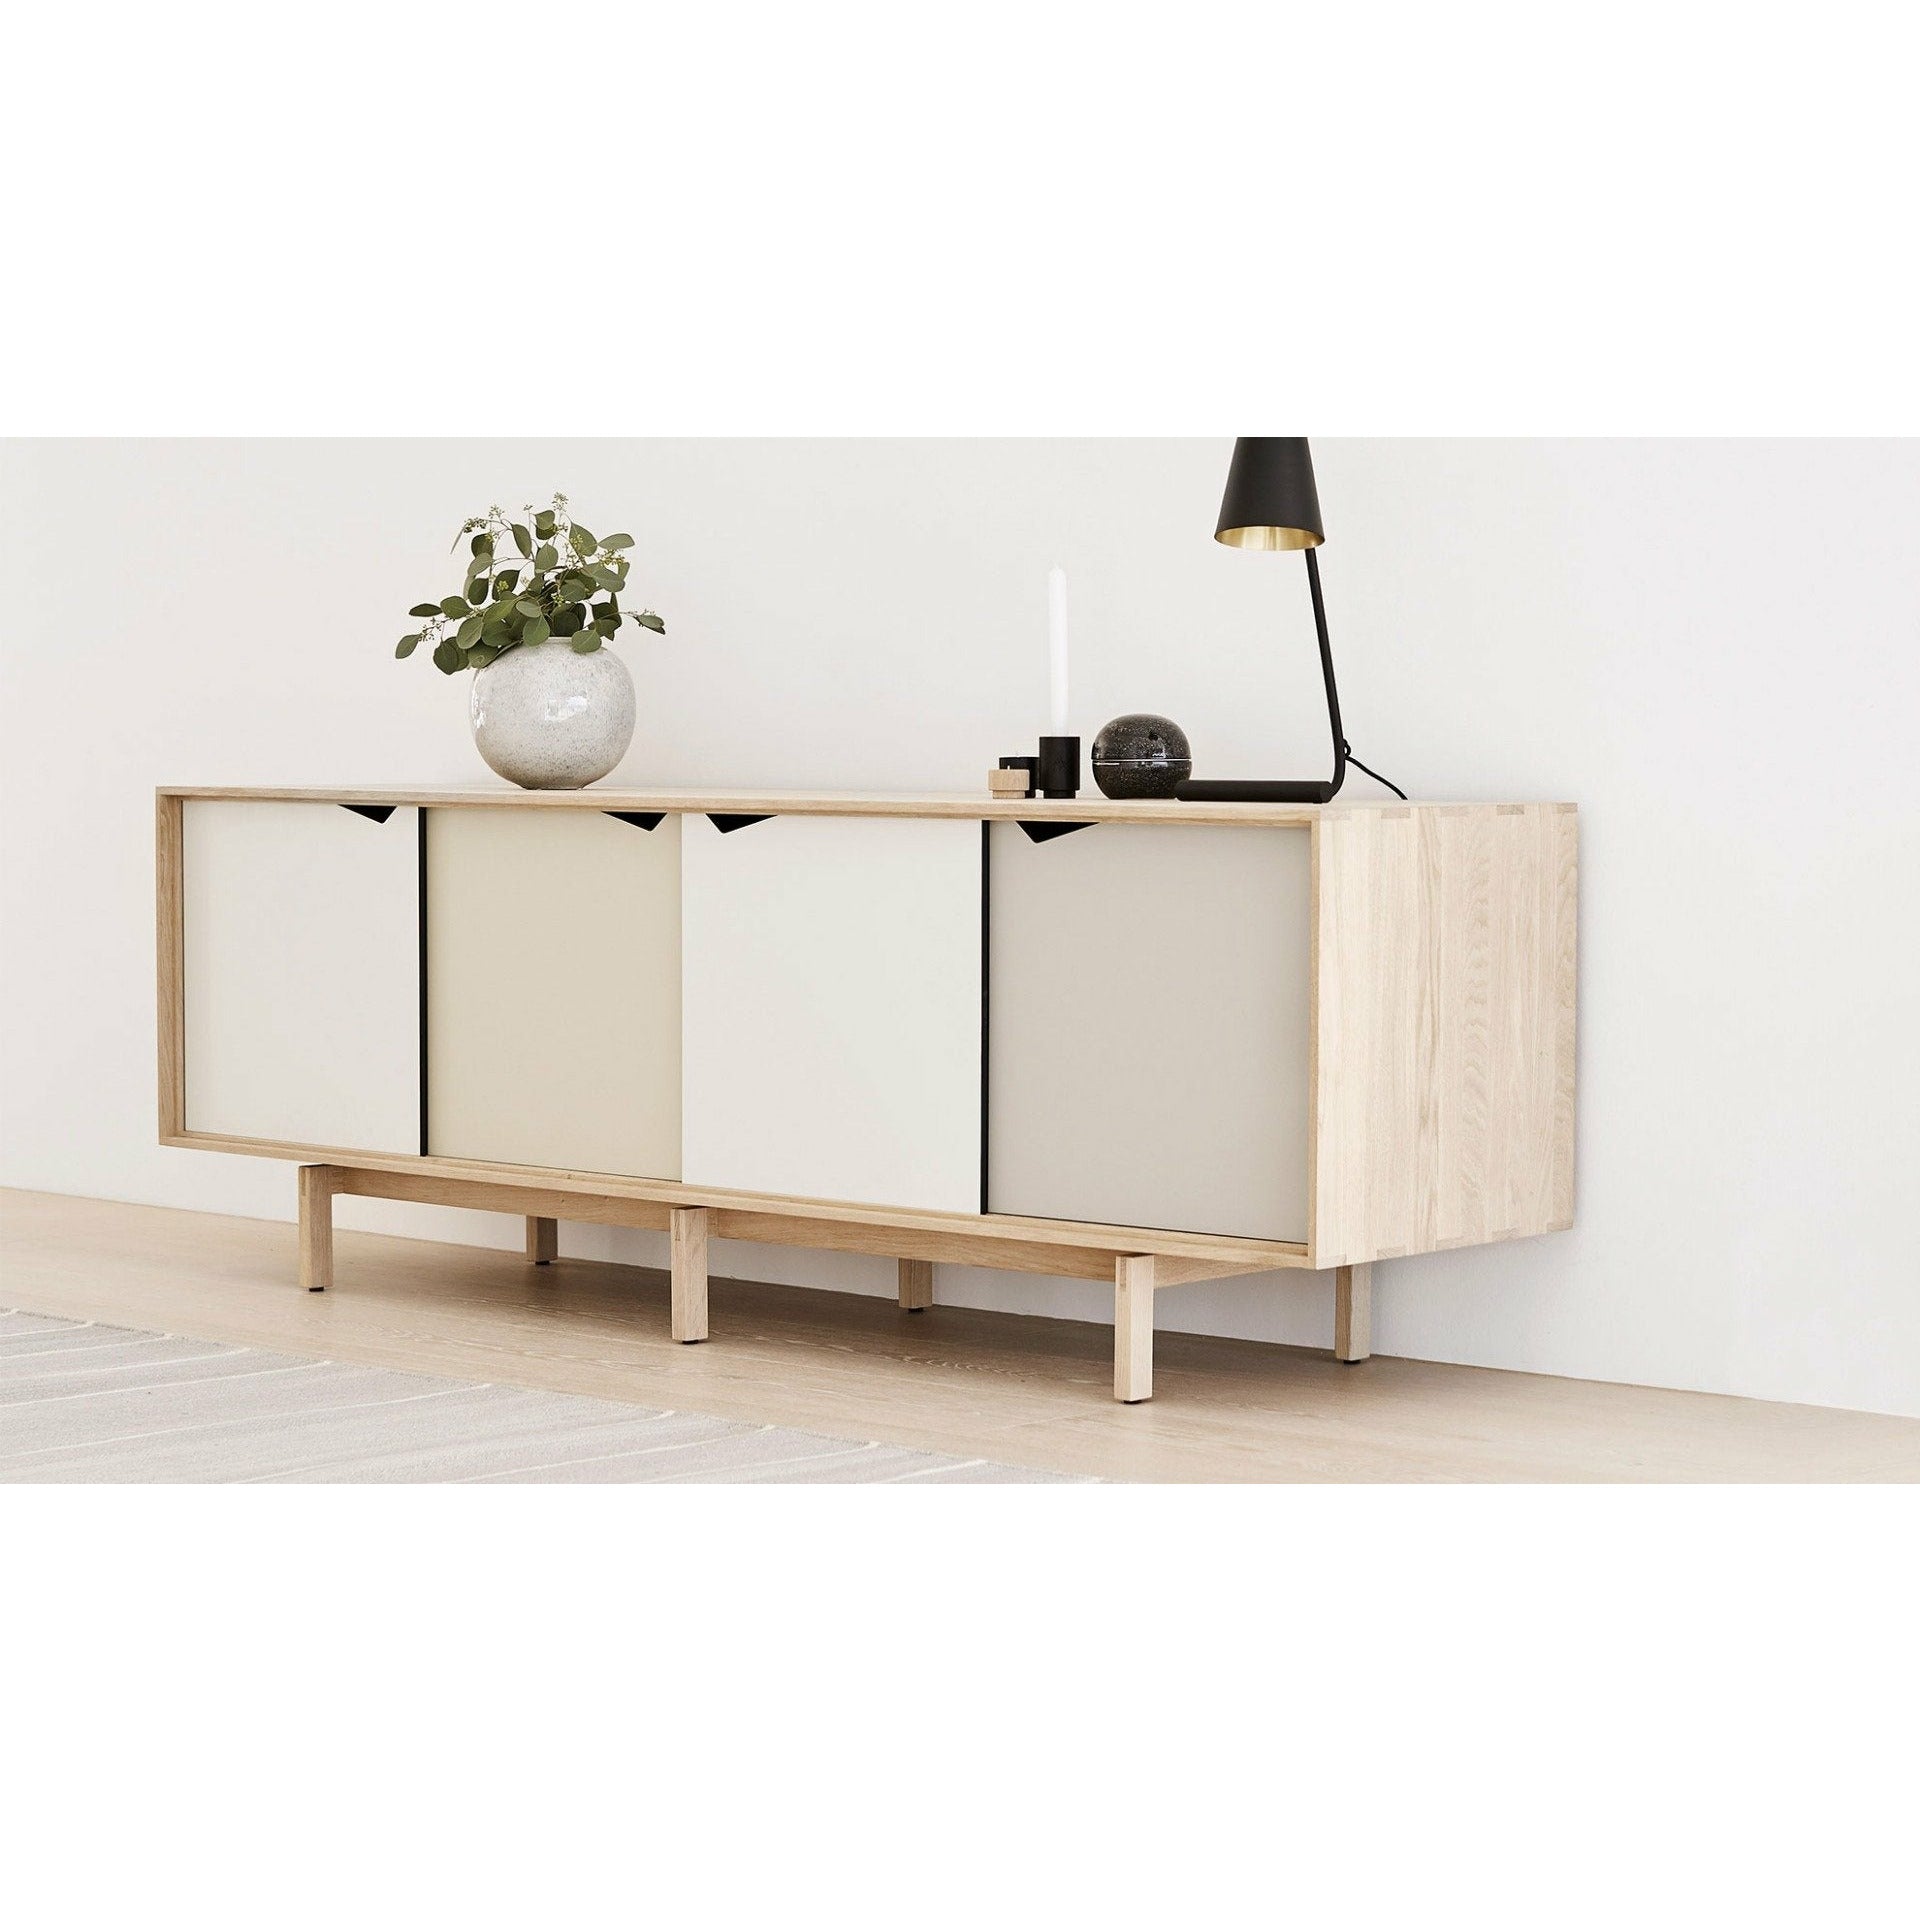 Andersen Furniture S1 Sideboard Sæbet Eg, Flerfarvede Låger, 200cm